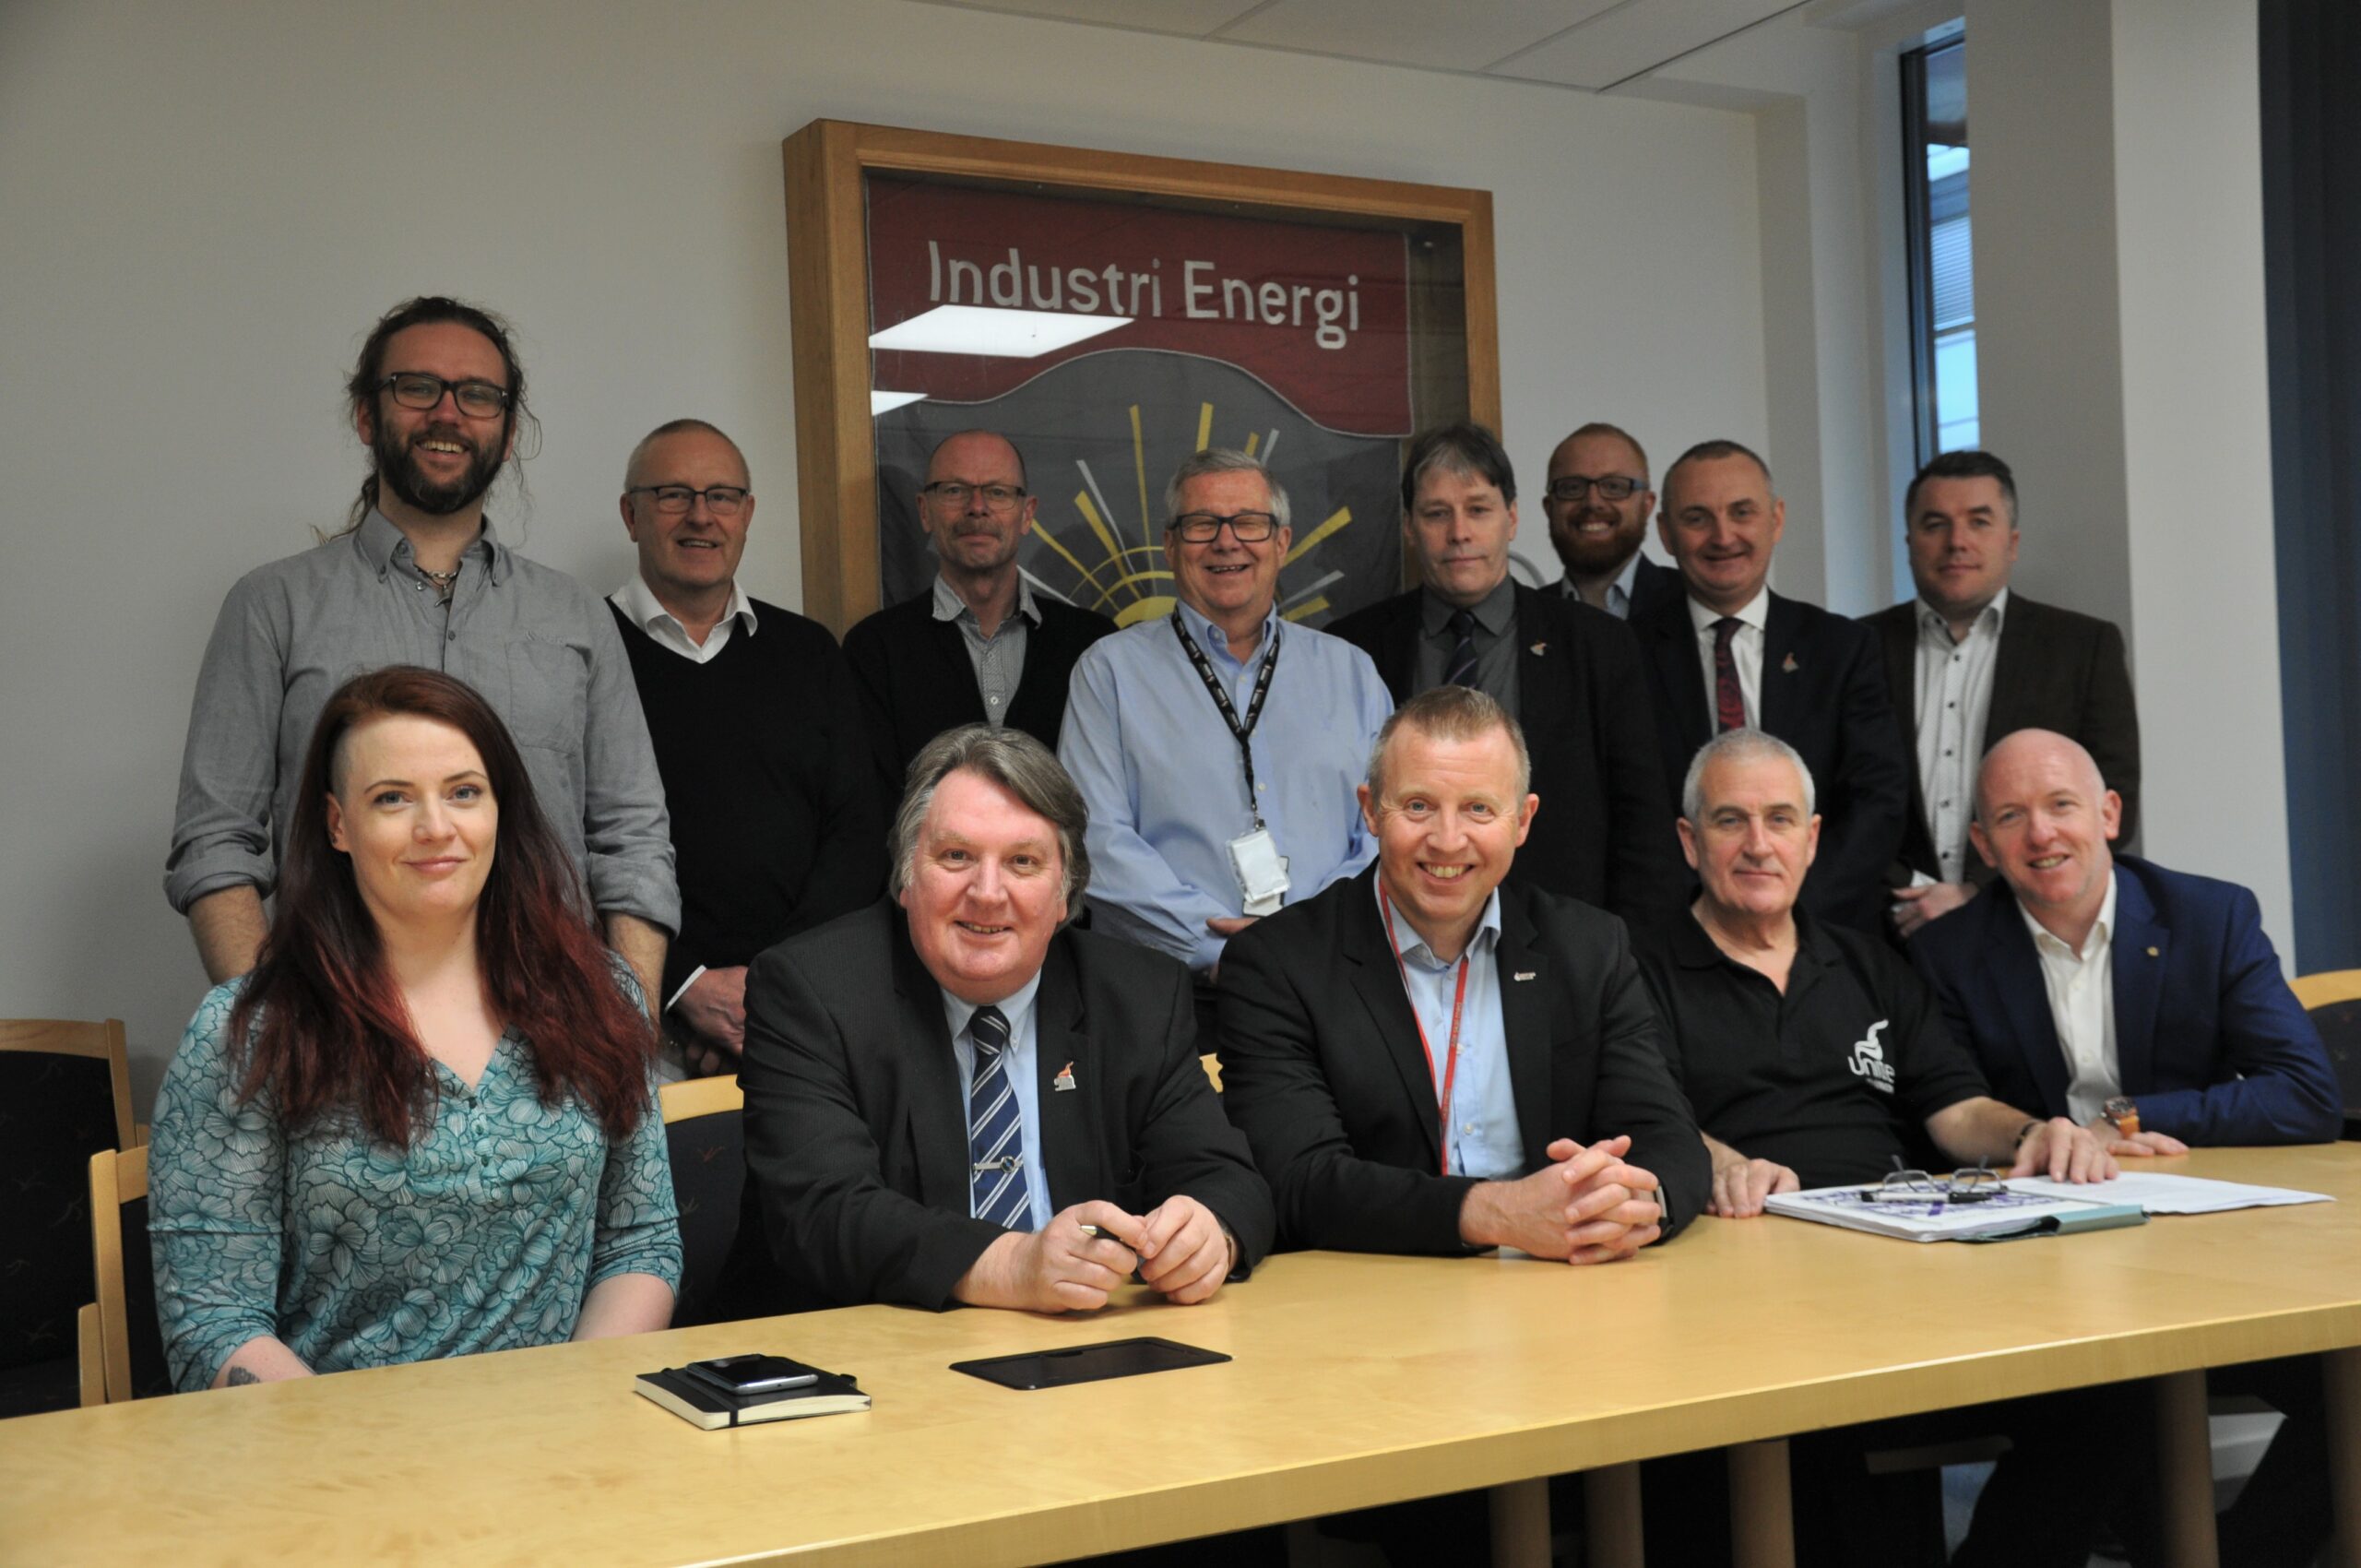 Representanter for Industri Energi og det britiske fagforbundet Unite diskuterte felles utfordringer.